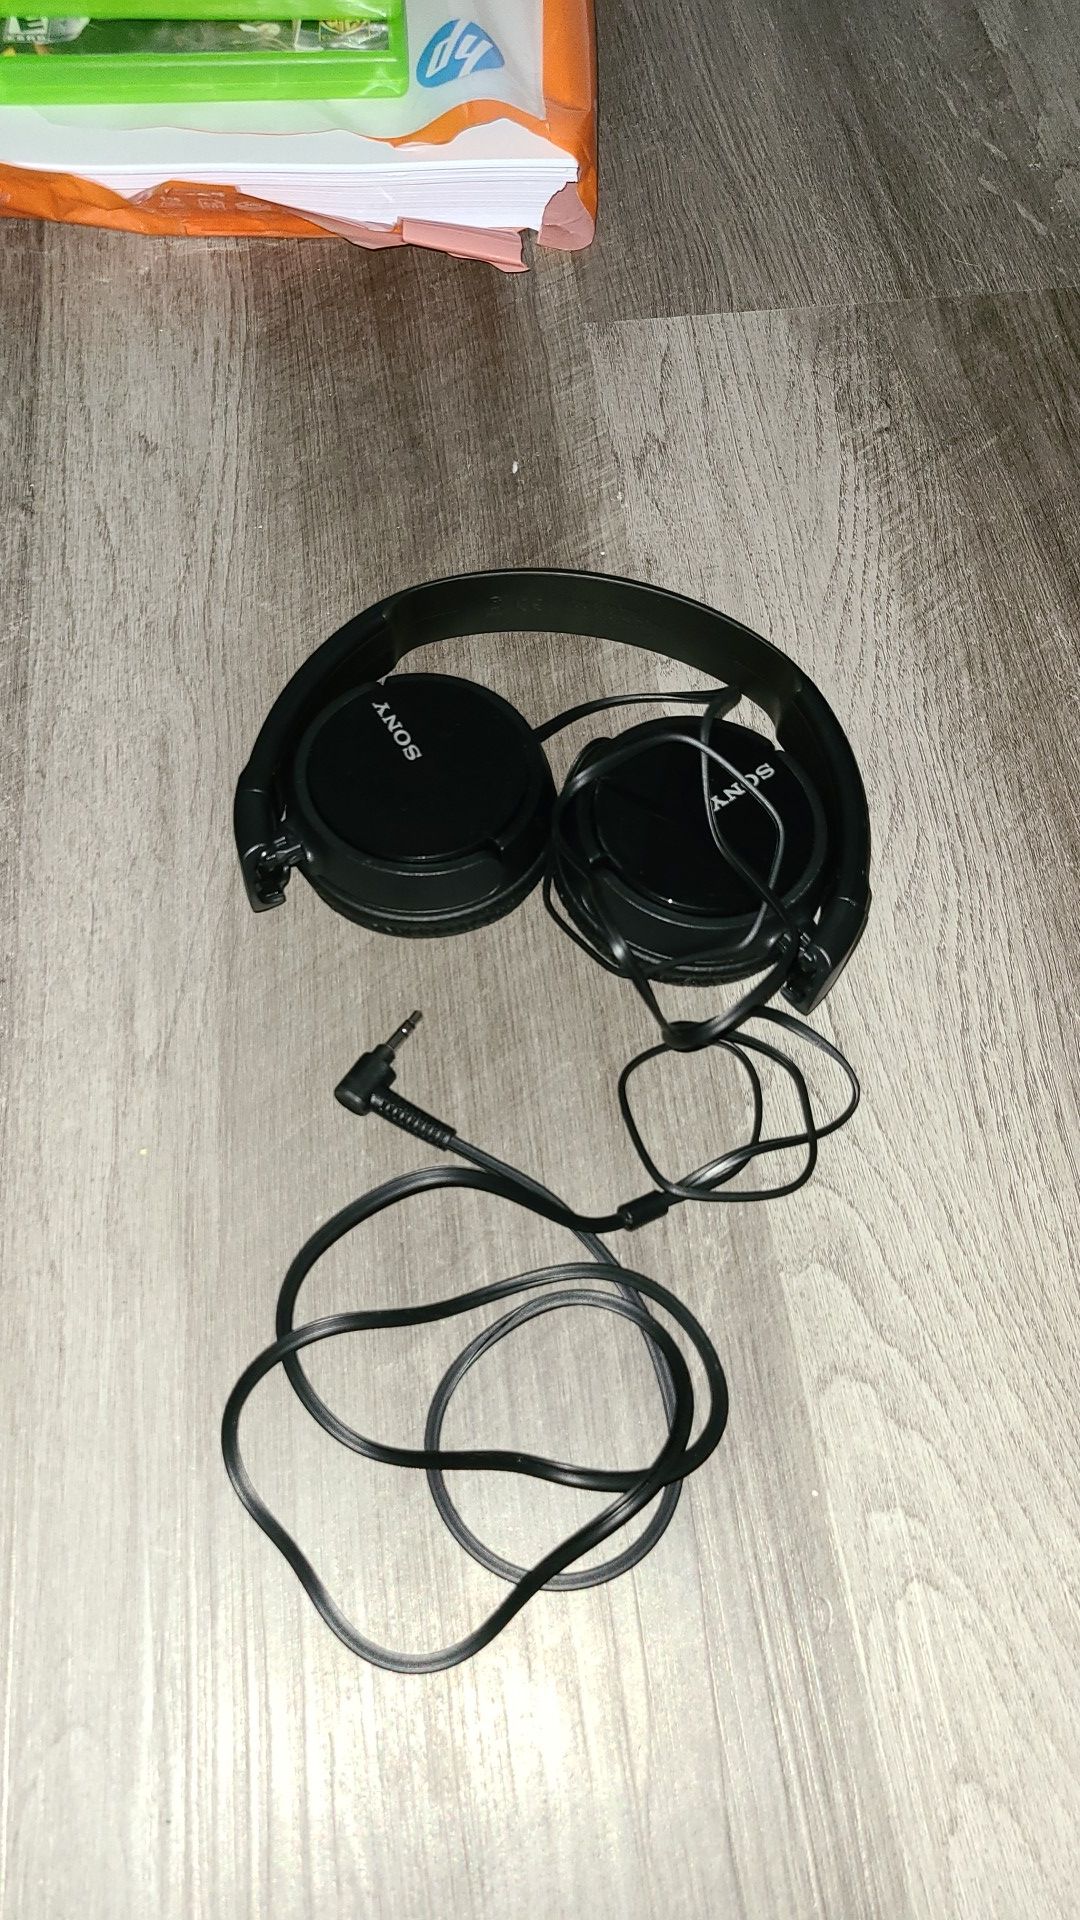 Sony headphones